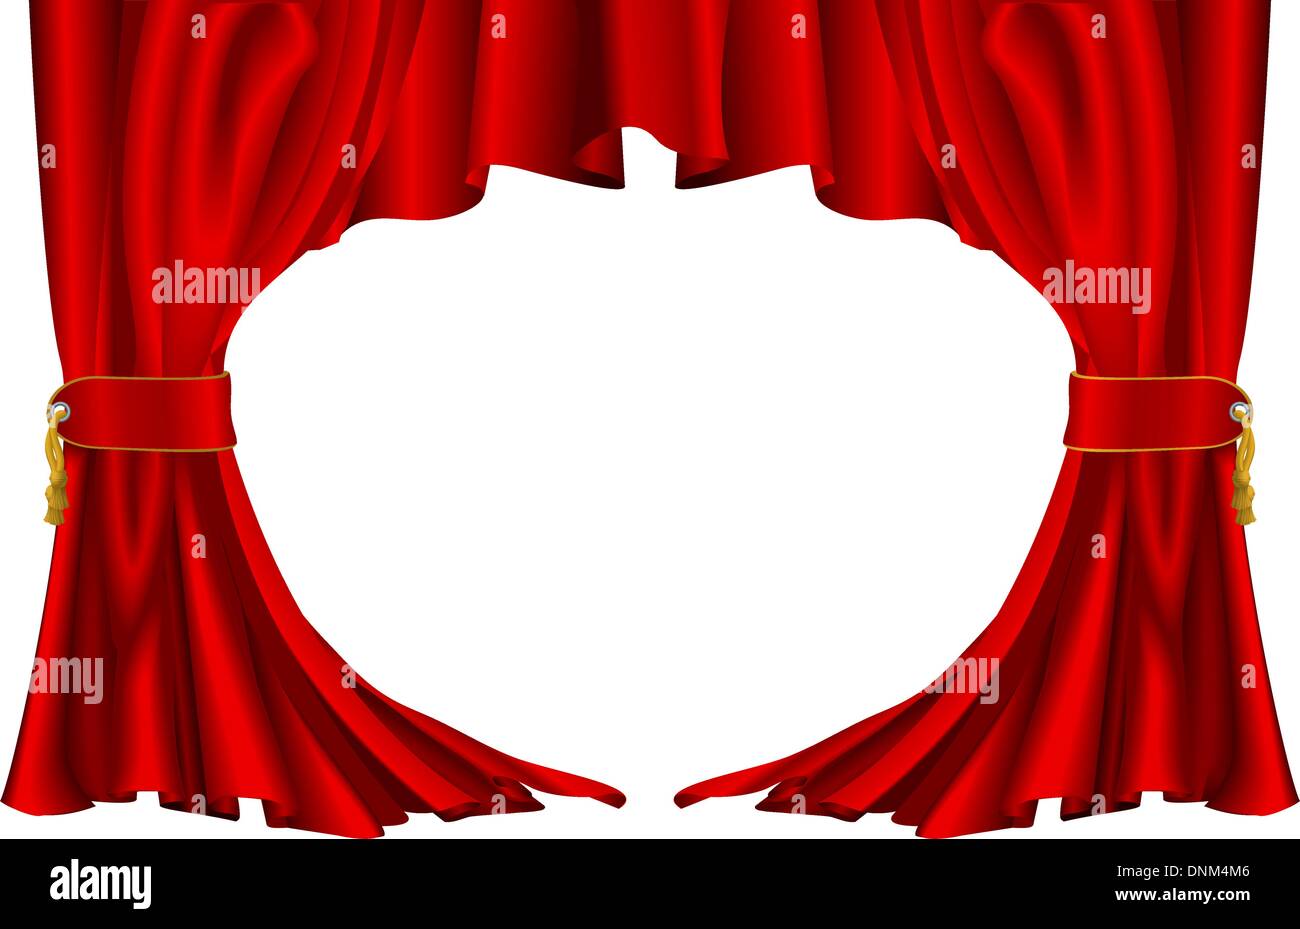 Une illustration d'une paire de rideaux de style théâtre rouge Illustration de Vecteur